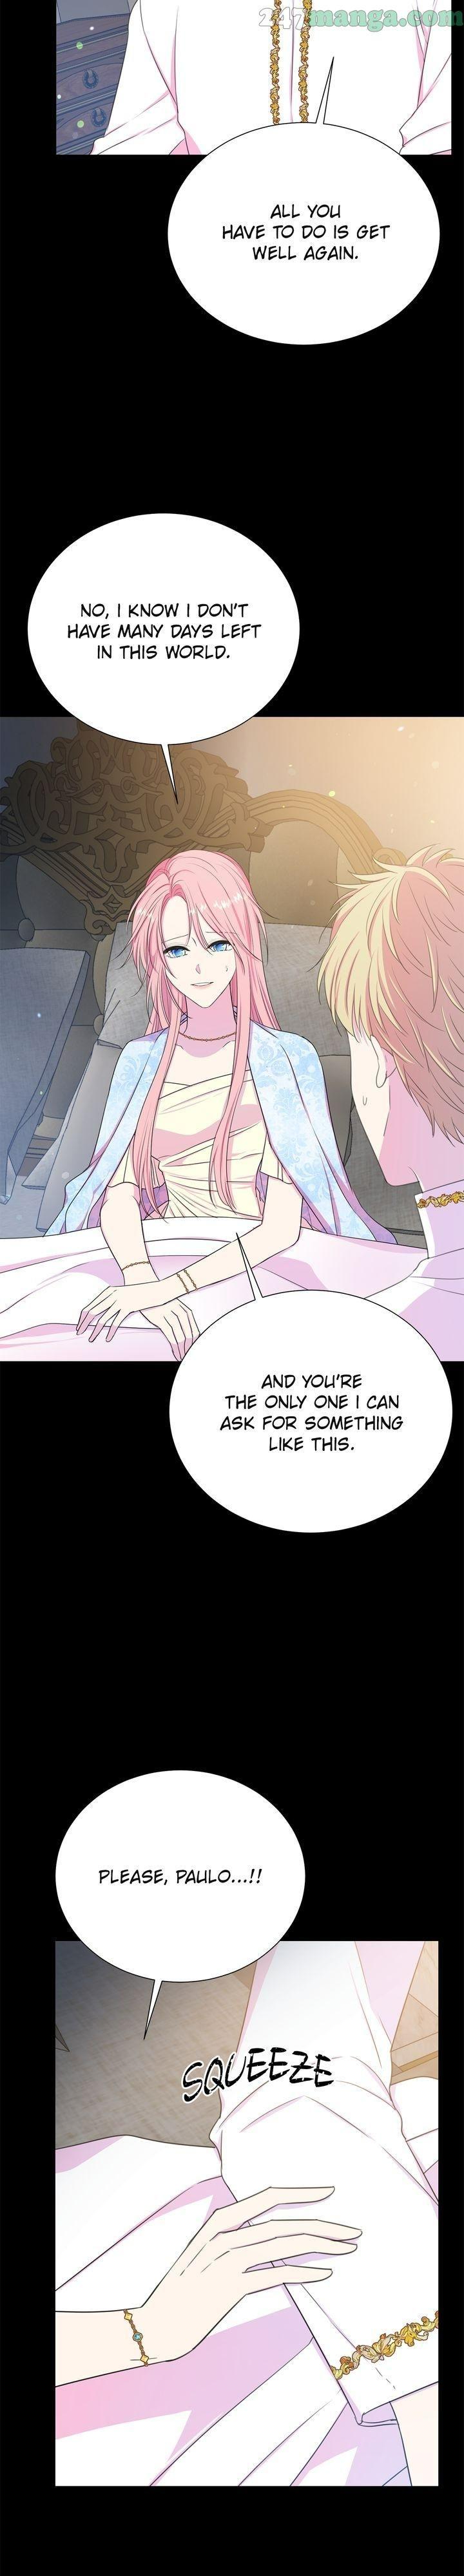 Lady Beast Chapter 111 page 12 - Mangakakalot